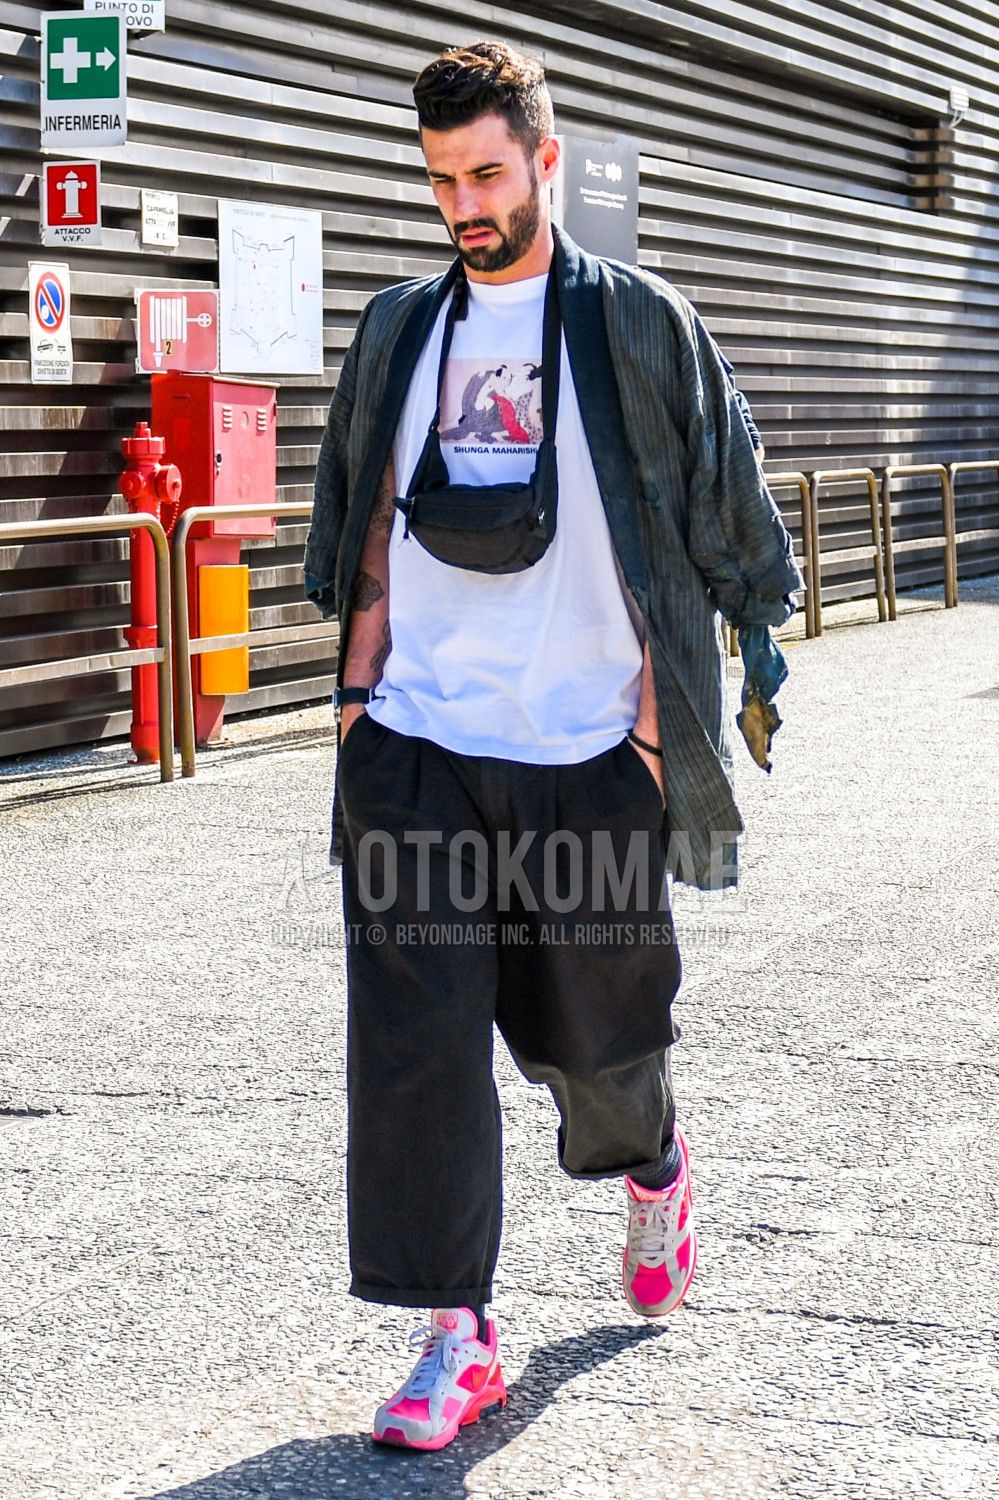 エアマックス コーデ特集 ナイキの人気スニーカーを使ったメンズ着こなしを紹介 メンズファッションメディア Otokomae 男前研究所 ページ 3 ページ 3